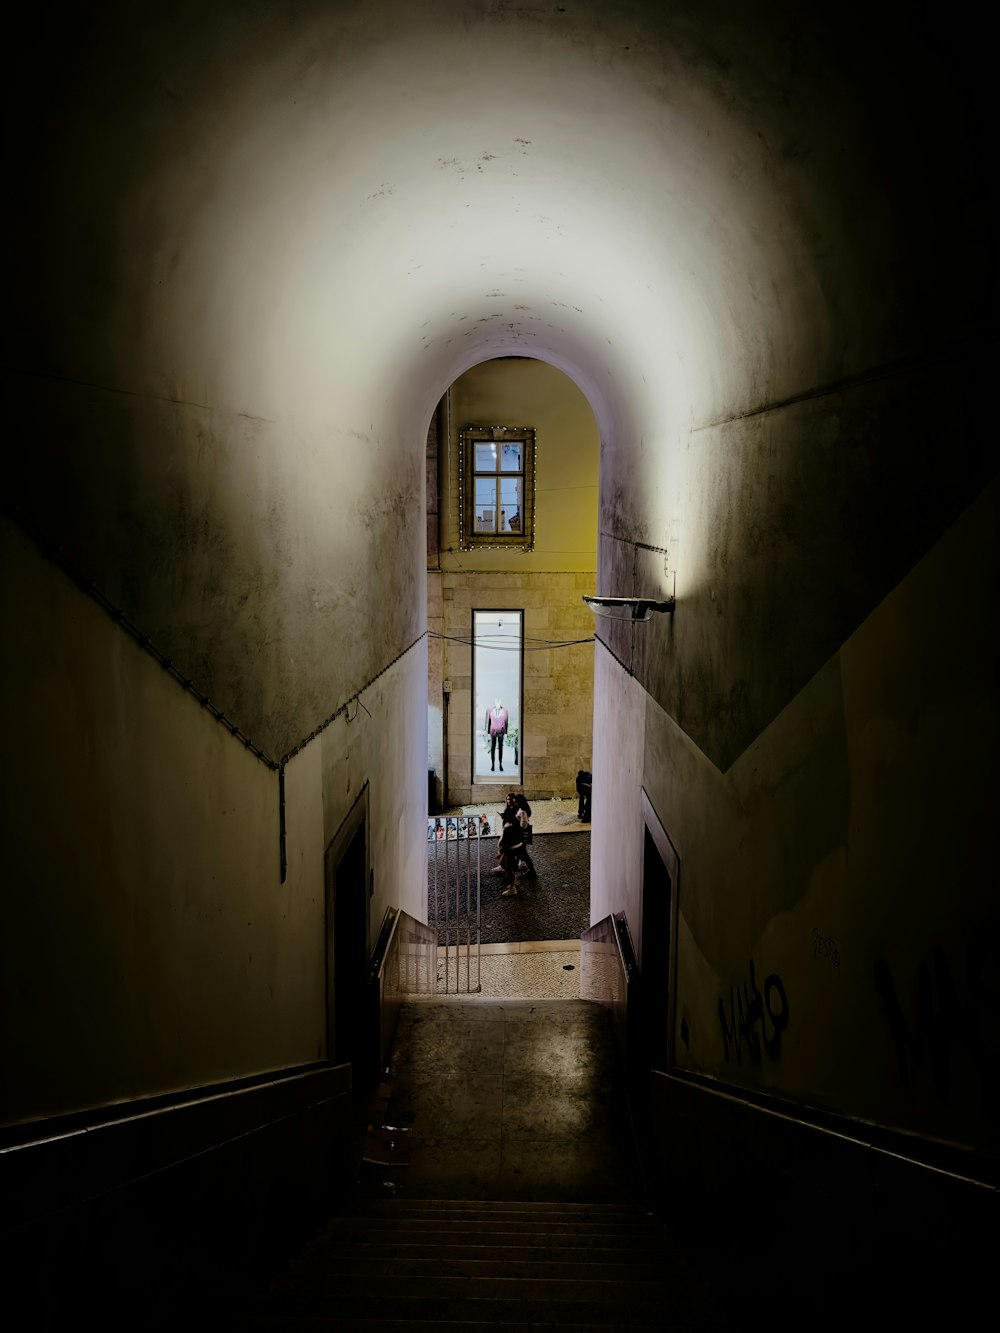 Un túnel oscuro con una persona caminando por él